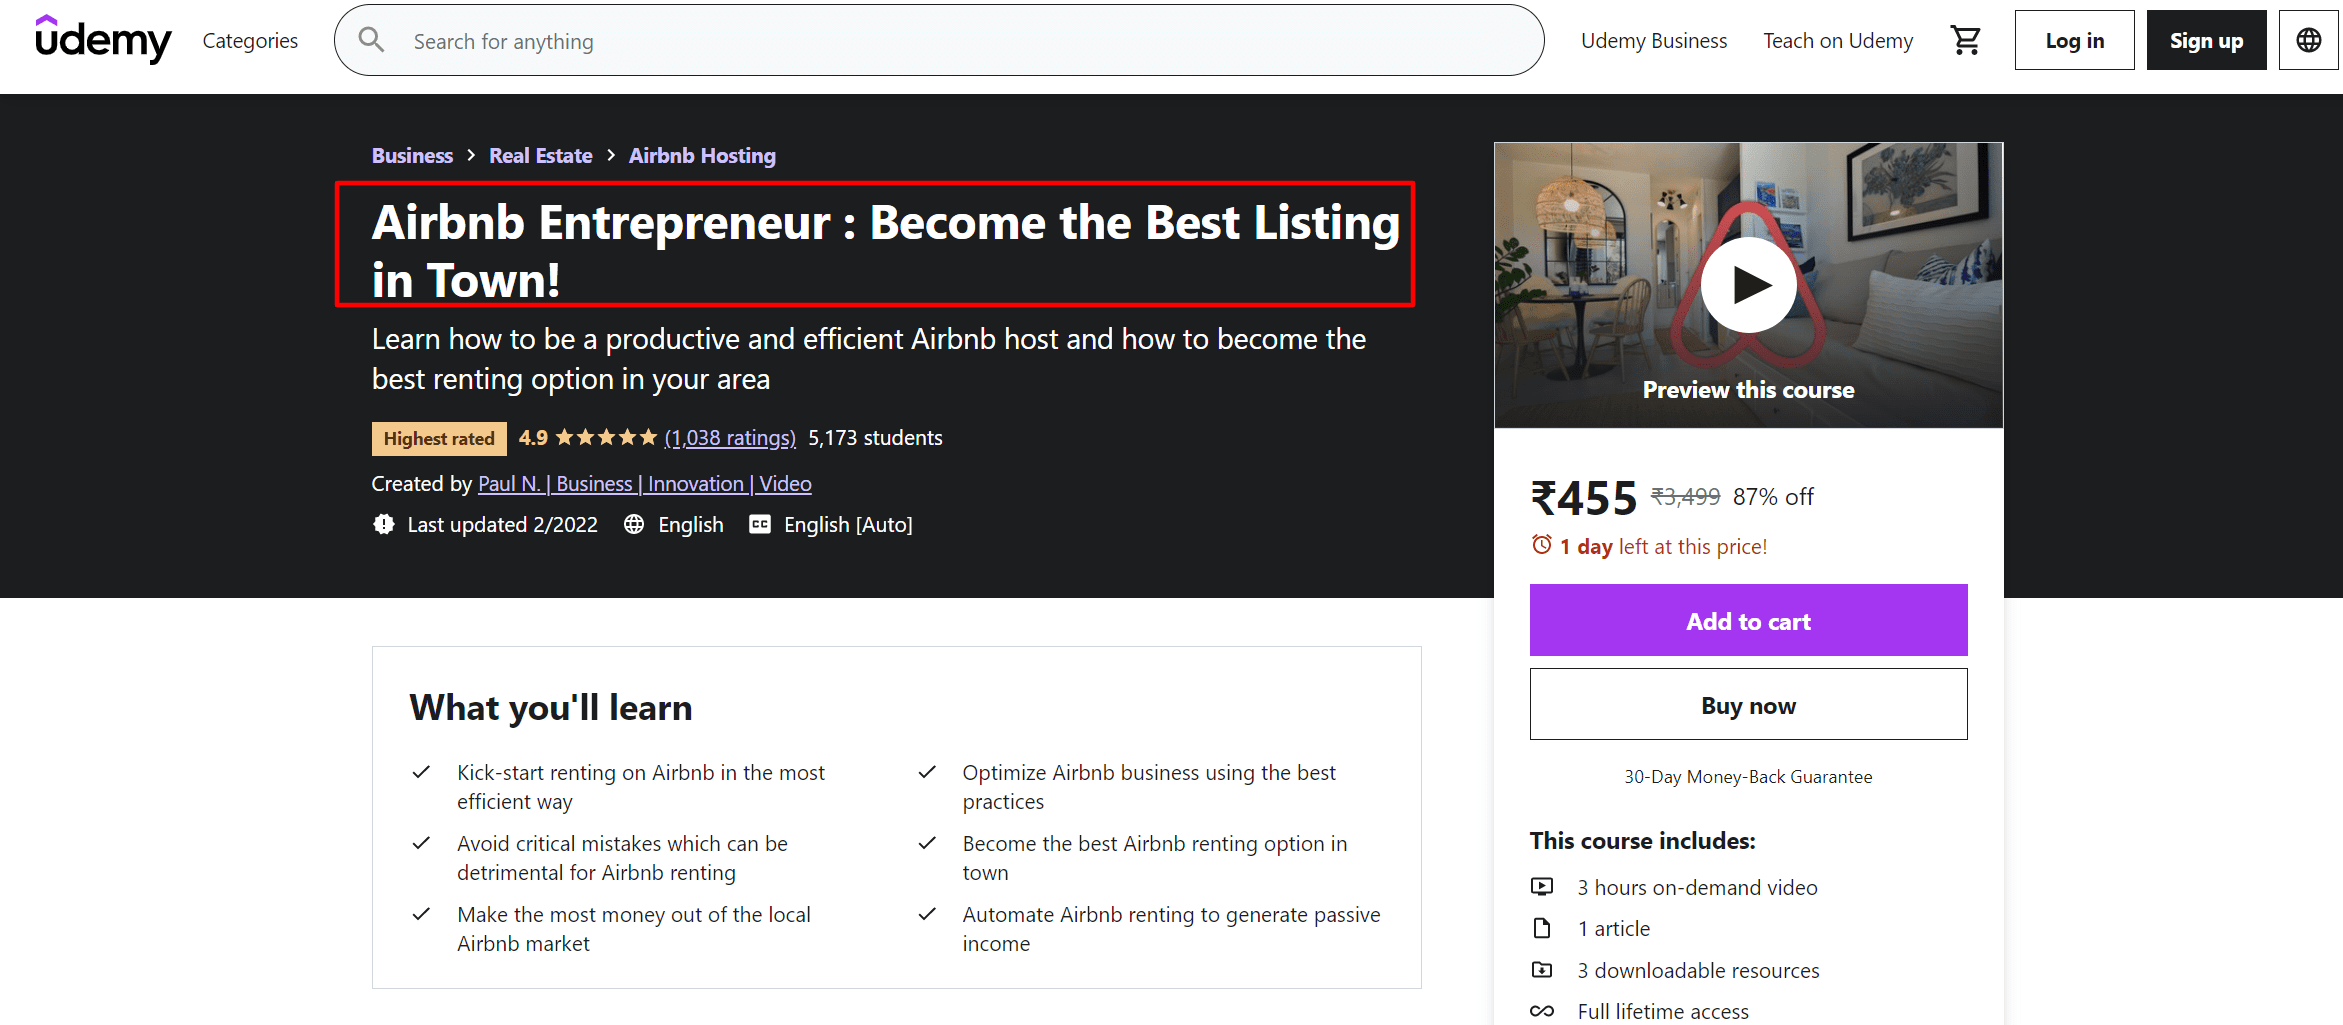 Airbnb Entrepreneur course